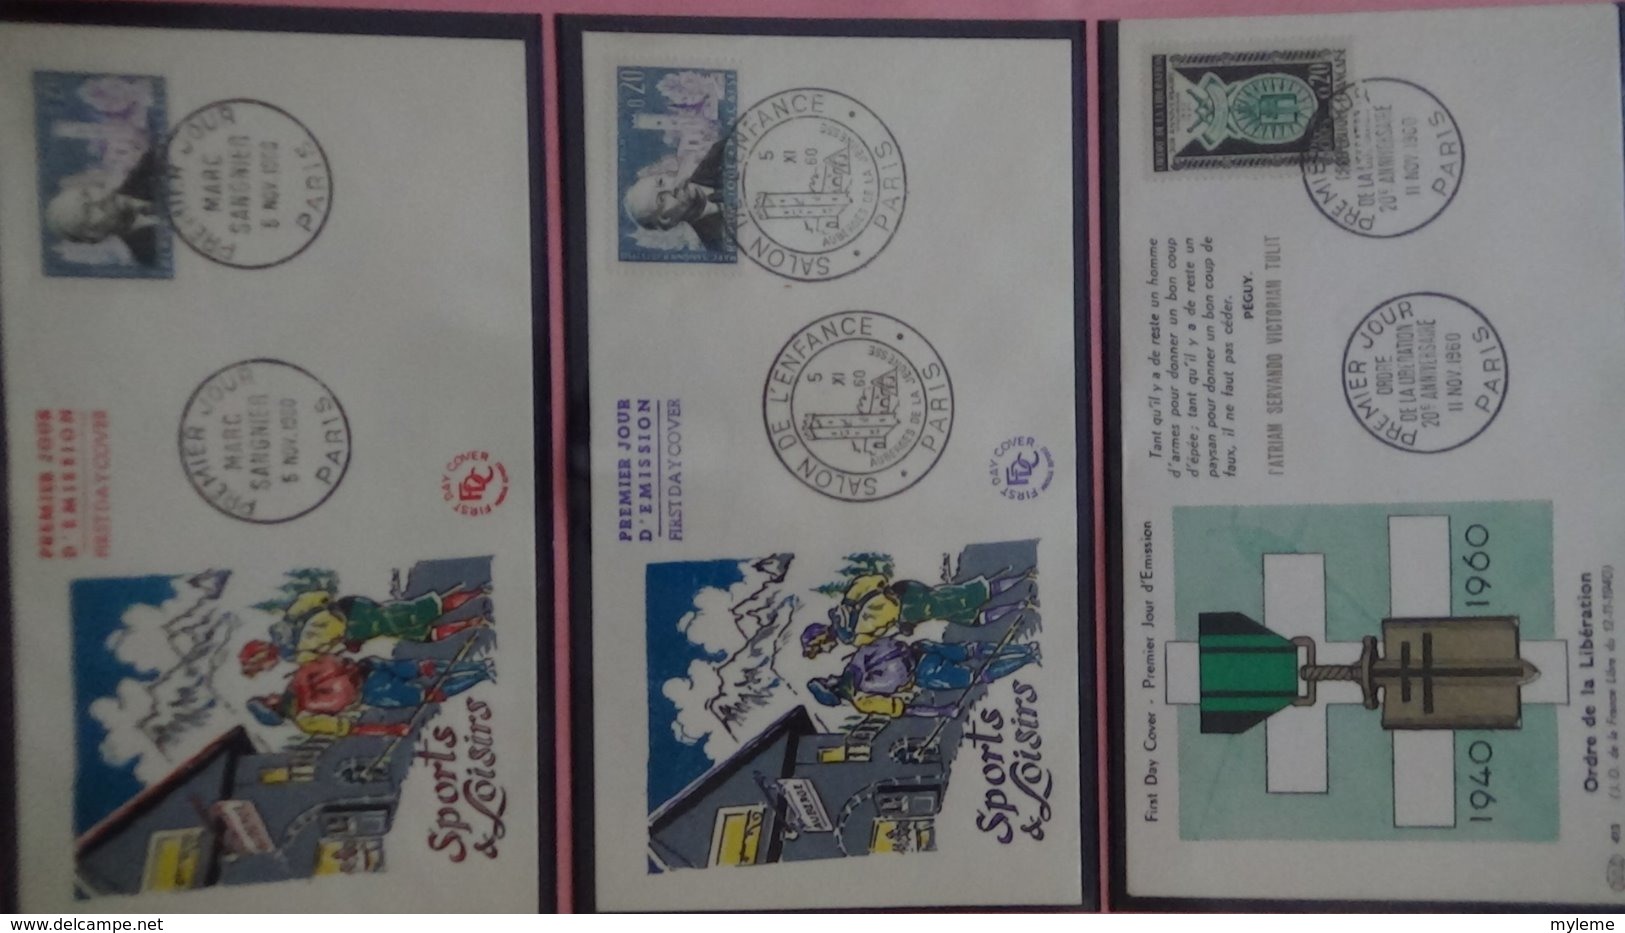 64 enveloppes 1er jour de France 1960 PORT OFFERT (lettre verte)  si ce lot dépasse les 10 euros soit 15cts/pièce